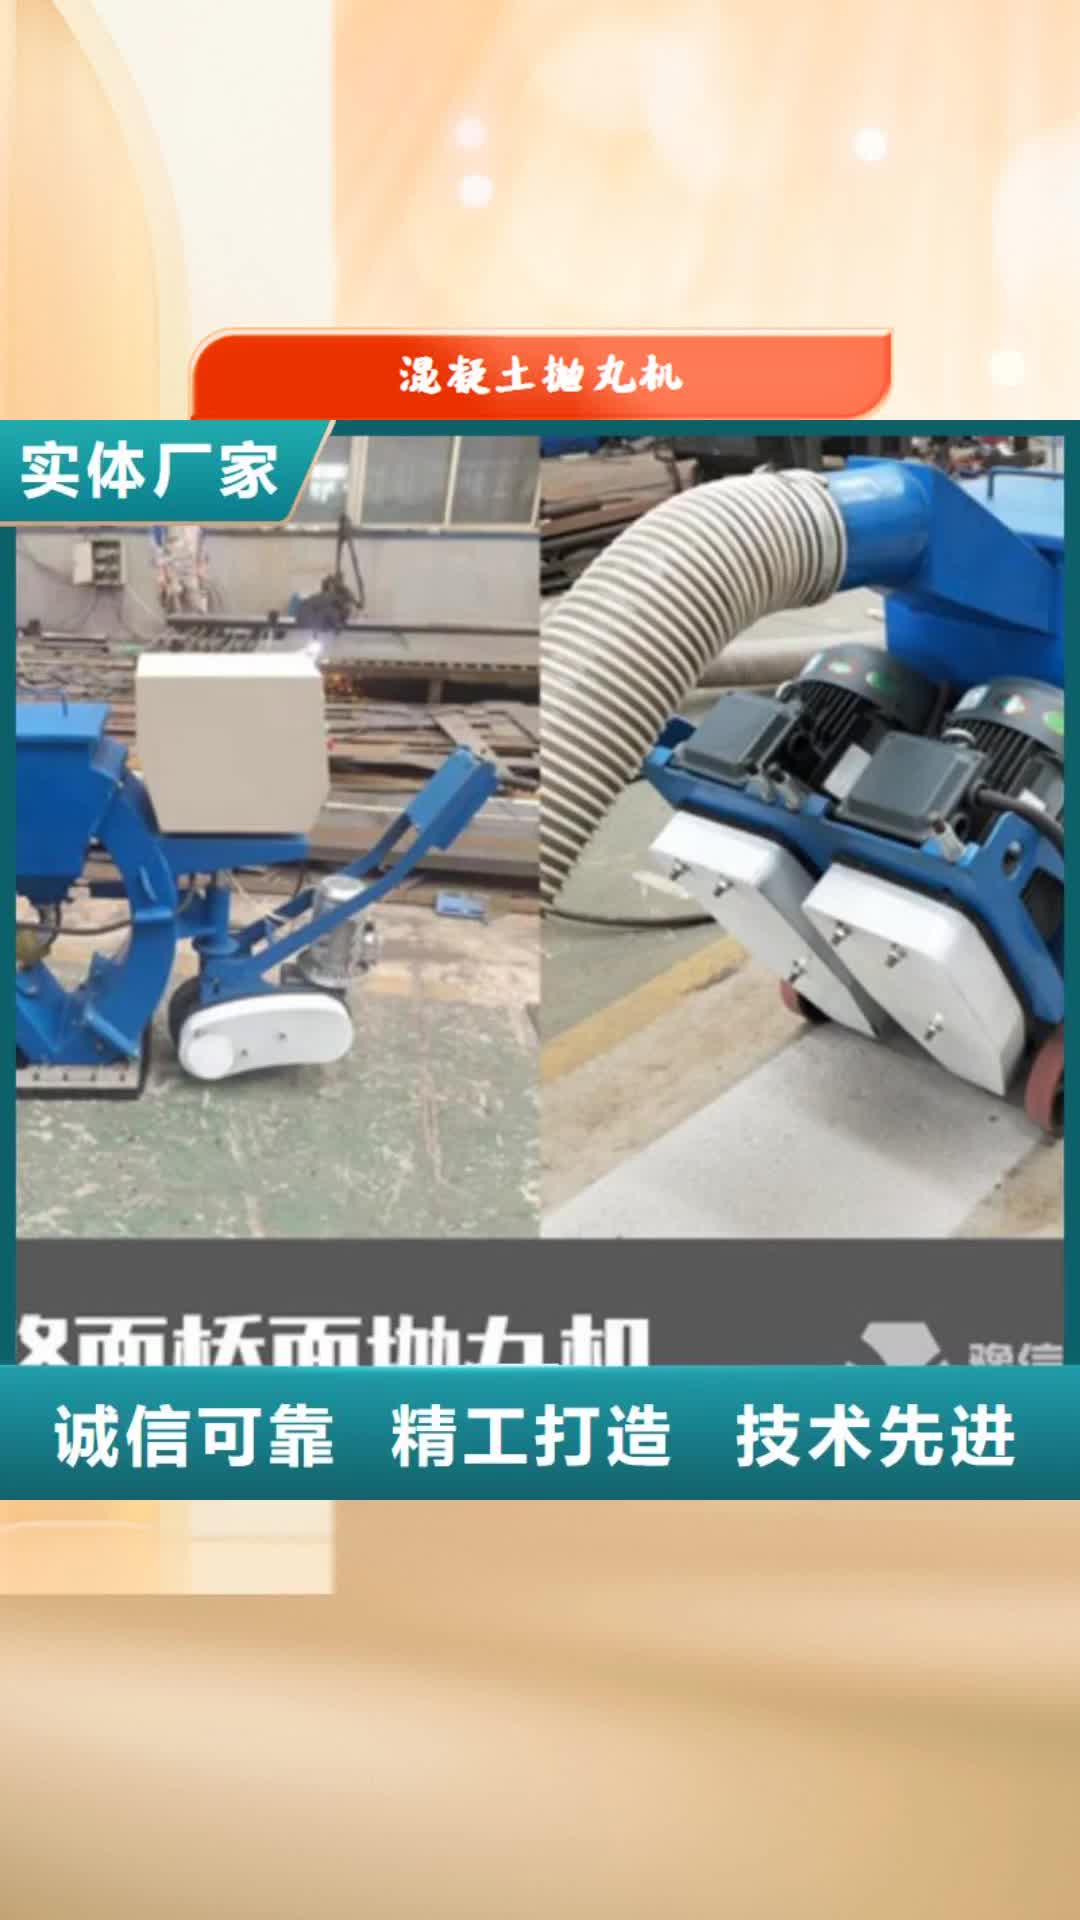 三亚【混凝土抛丸机】,软管泵专业供货品质管控